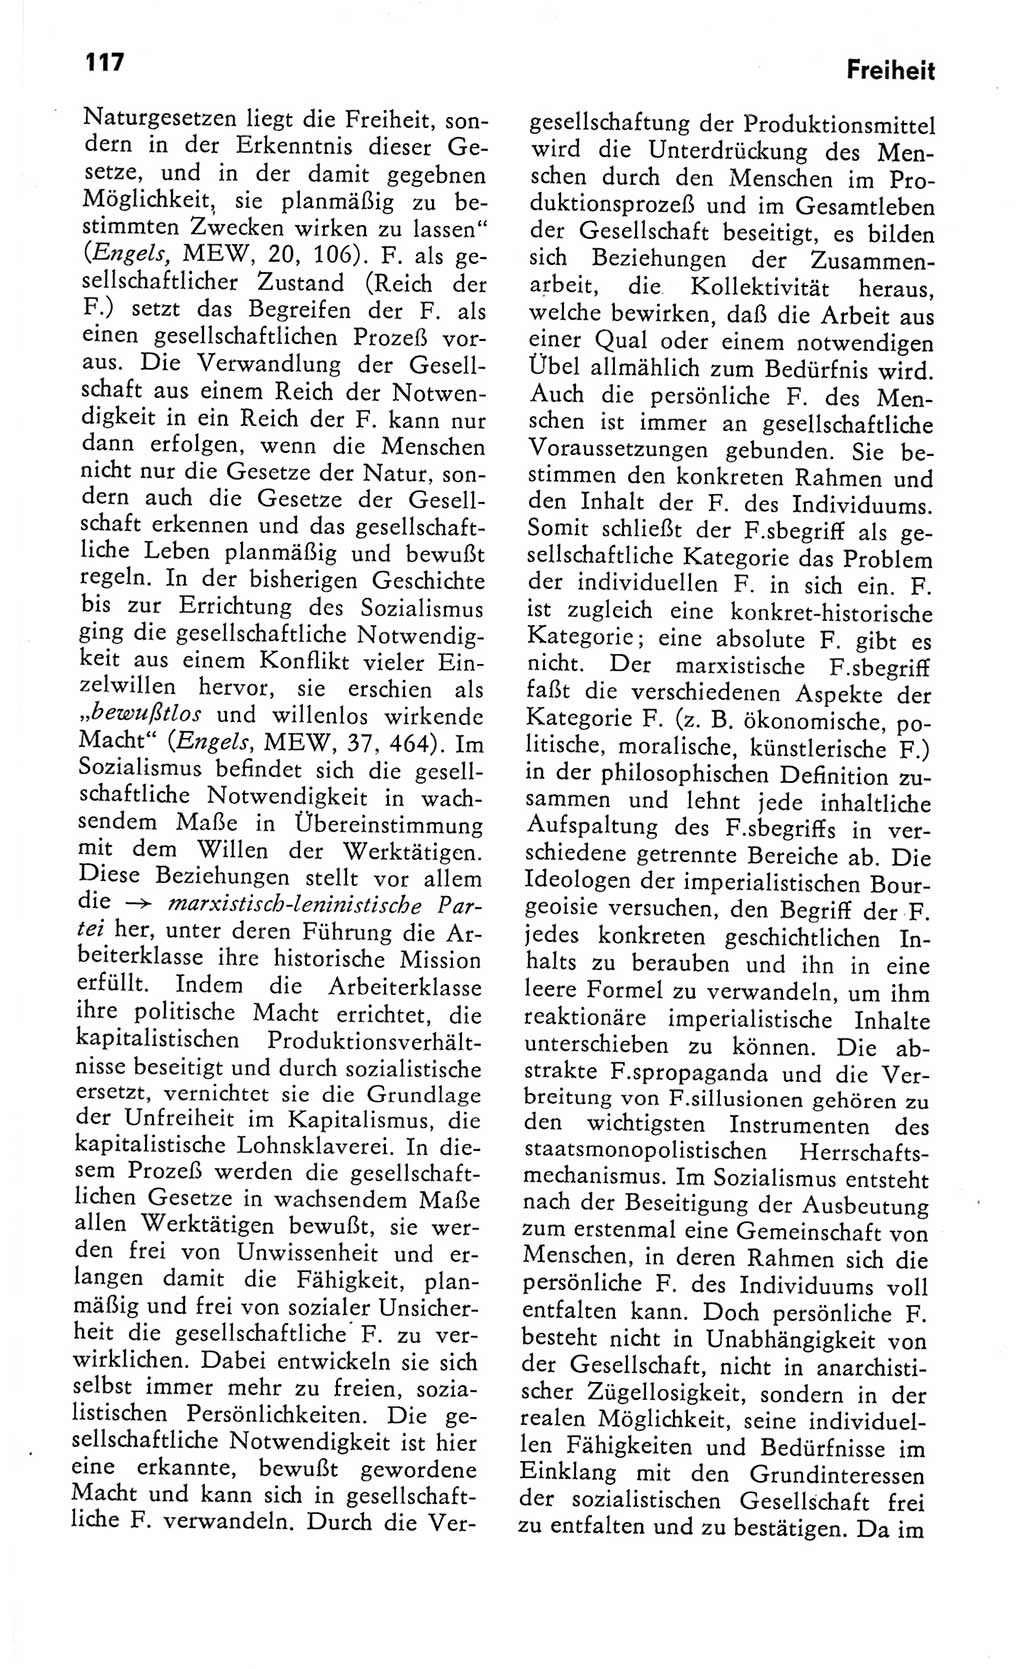 Kleines Wörterbuch der marxistisch-leninistischen Philosophie [Deutsche Demokratische Republik (DDR)] 1982, Seite 117 (Kl. Wb. ML Phil. DDR 1982, S. 117)